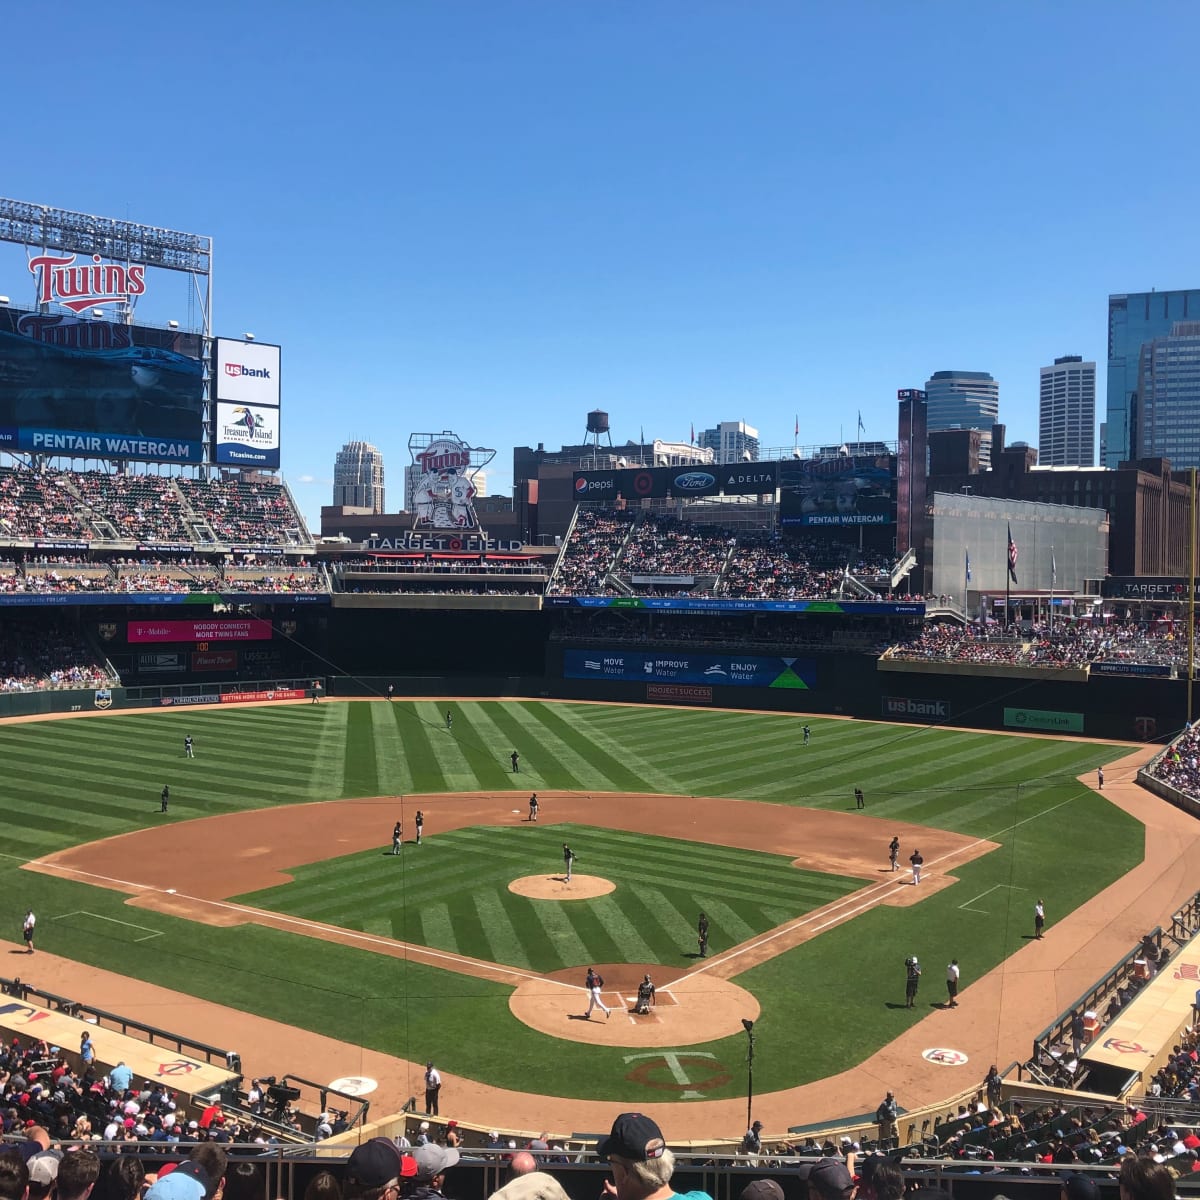 Minnesota Twins - Target Field 